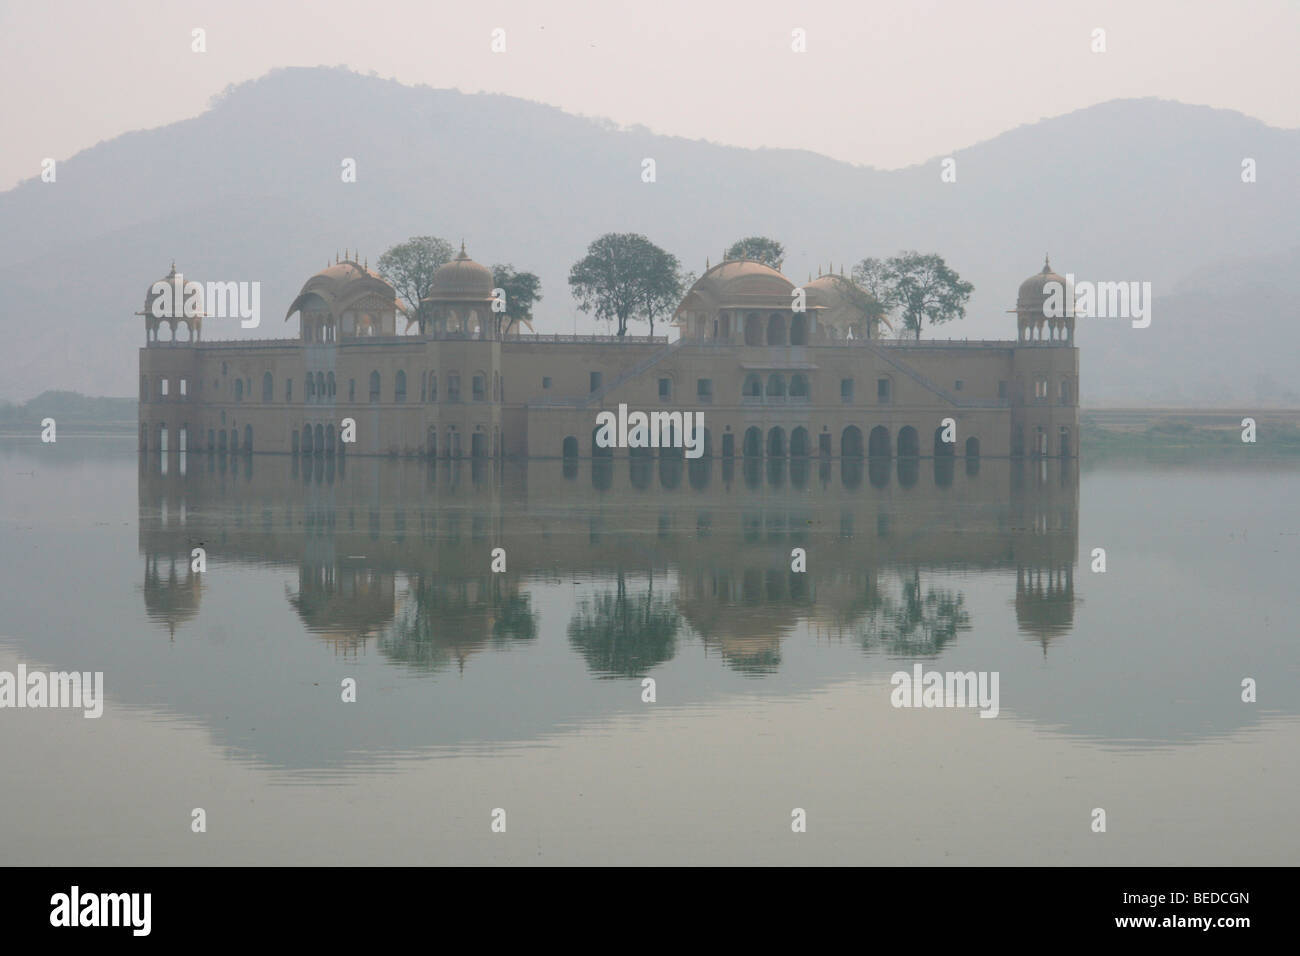 Palace at a lake, Jaipur, India, South Asia Stock Photo